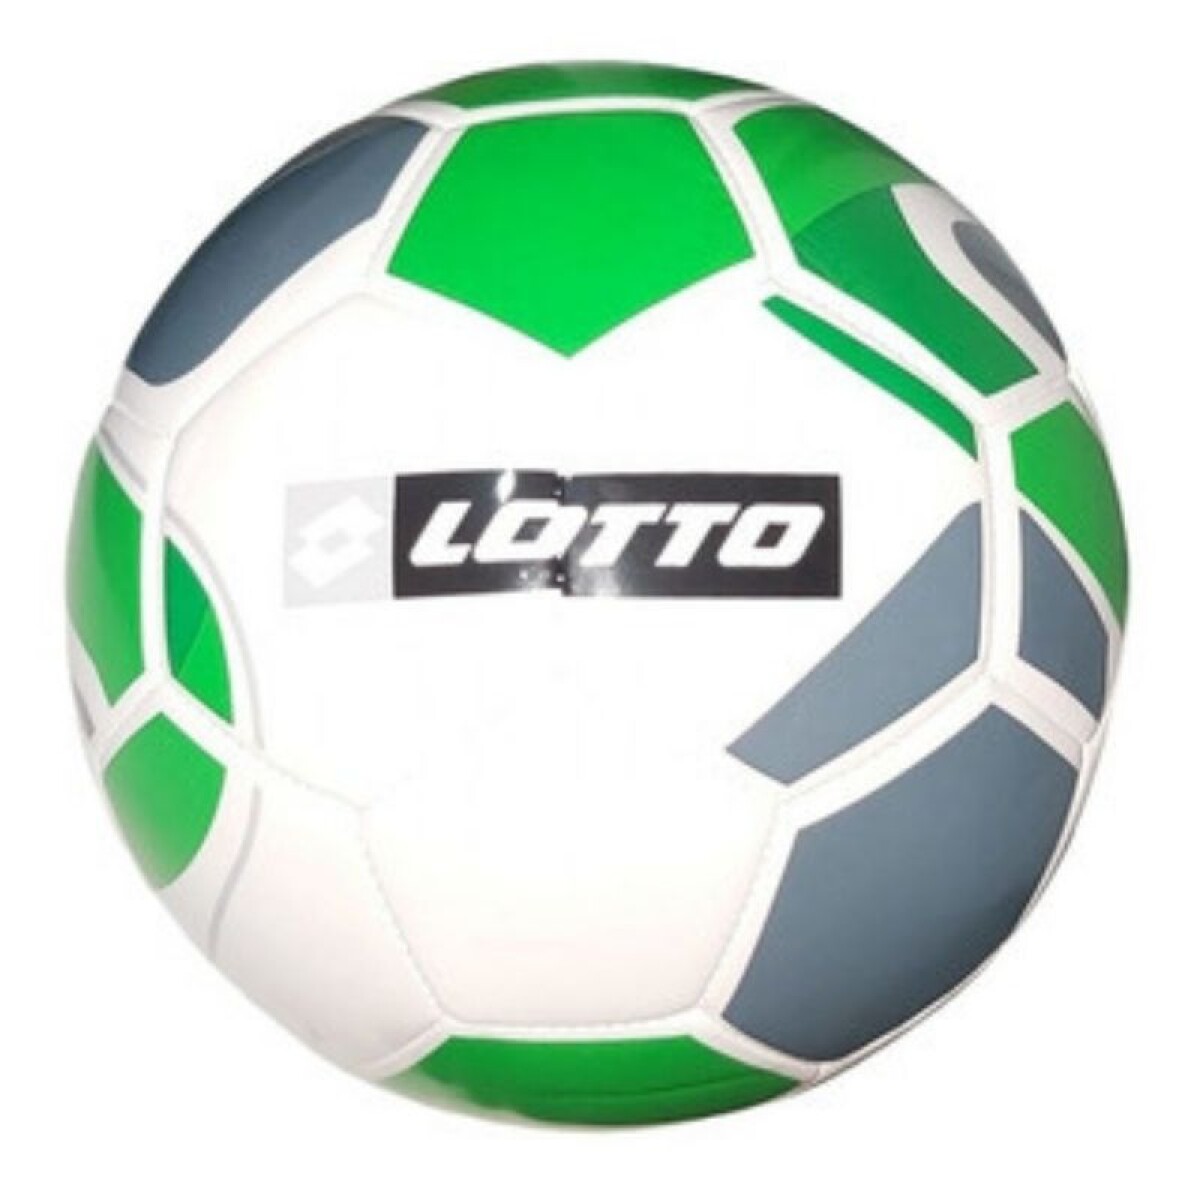 Pelota Lotto Futbol Nº4 Ciao Blanco/Verde - S/C 